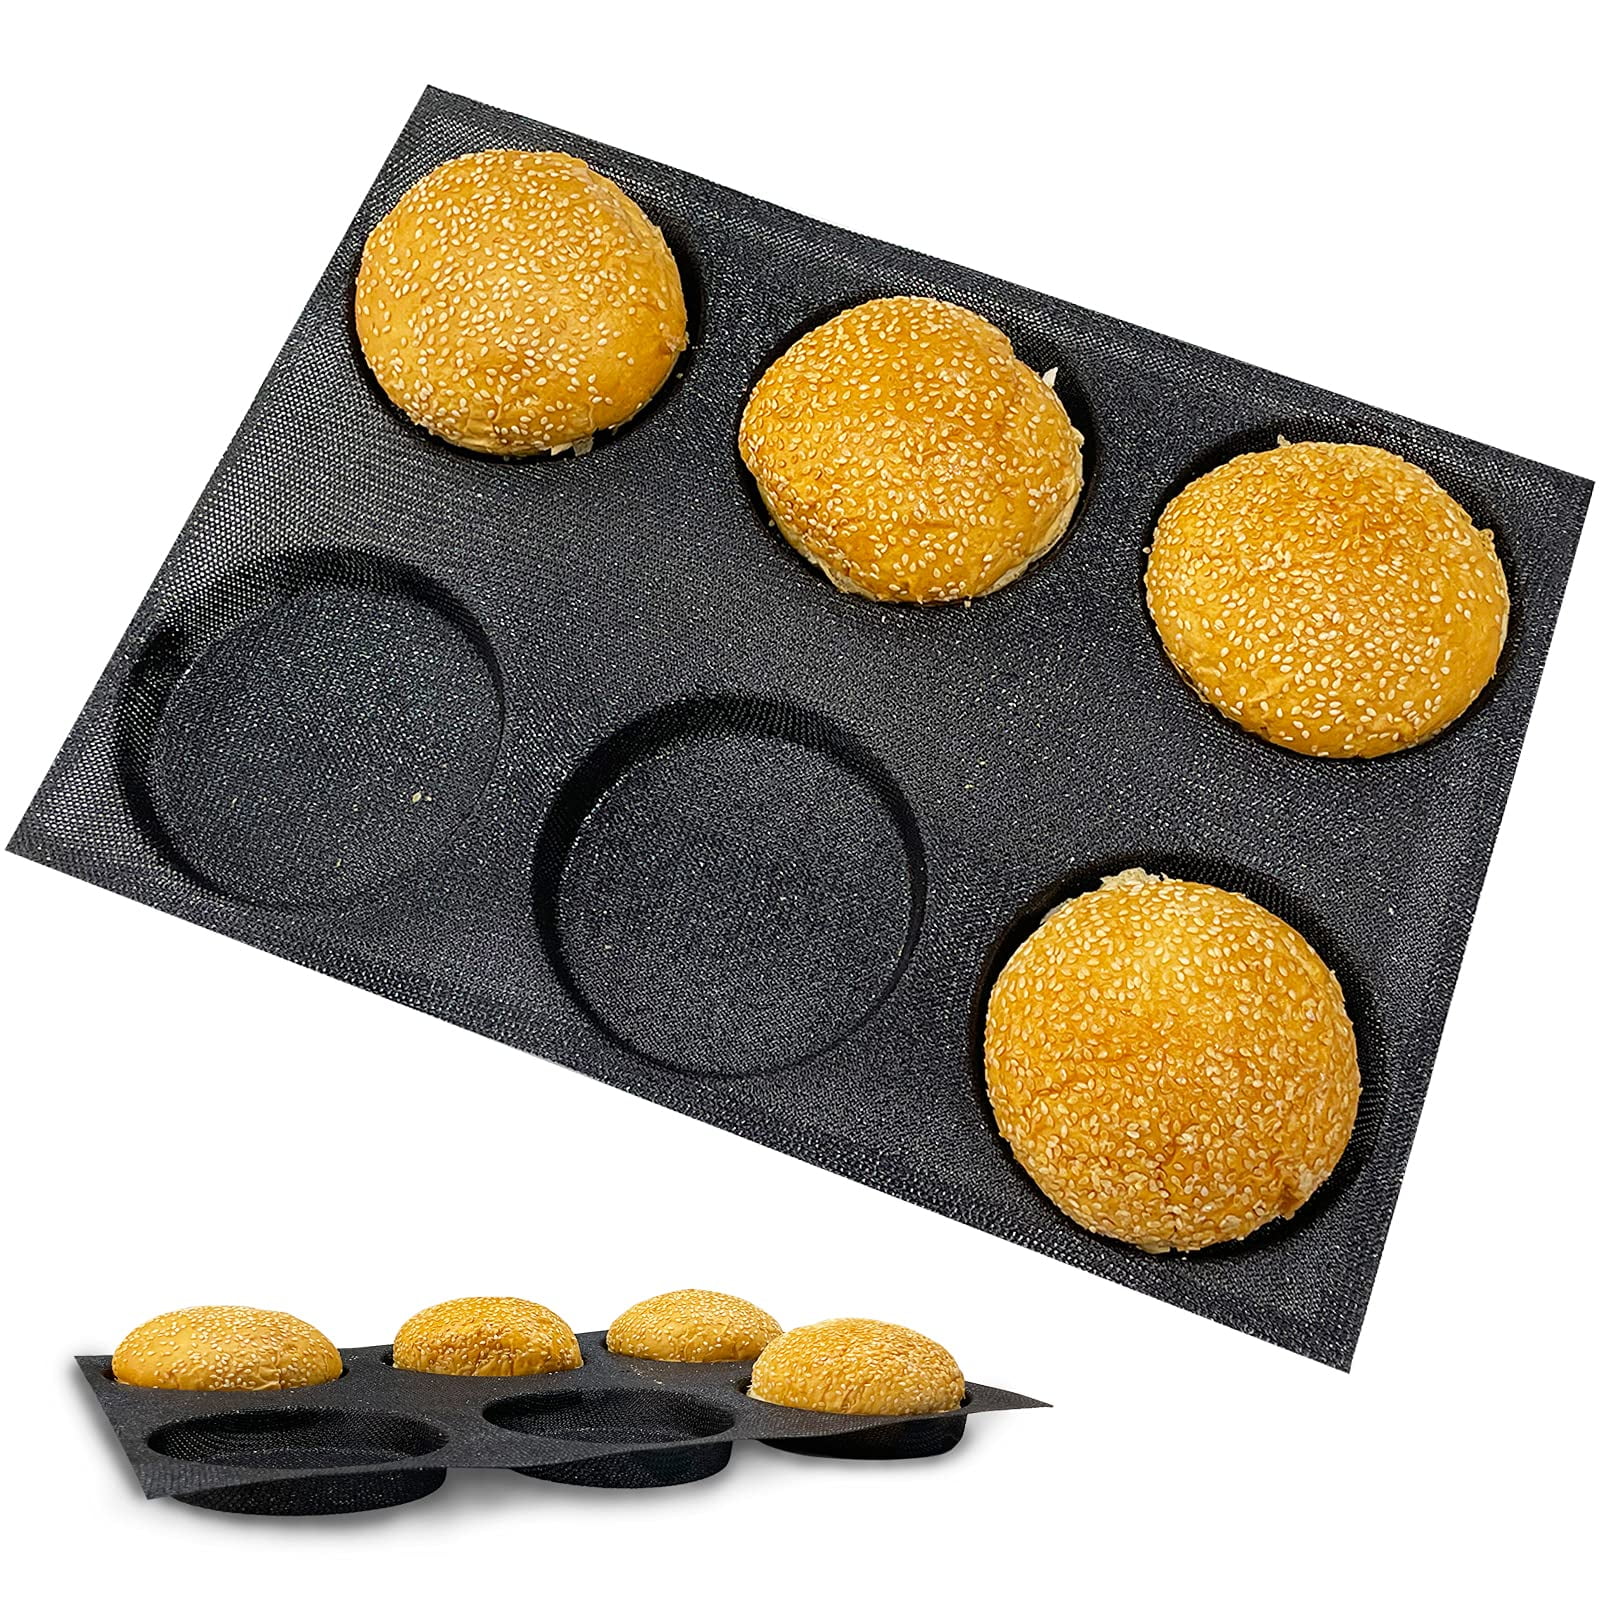 KBTBAK Black Perforated Silicone Hamburger Bun Pan, Non-Stick Baking Pan  for Making Buns